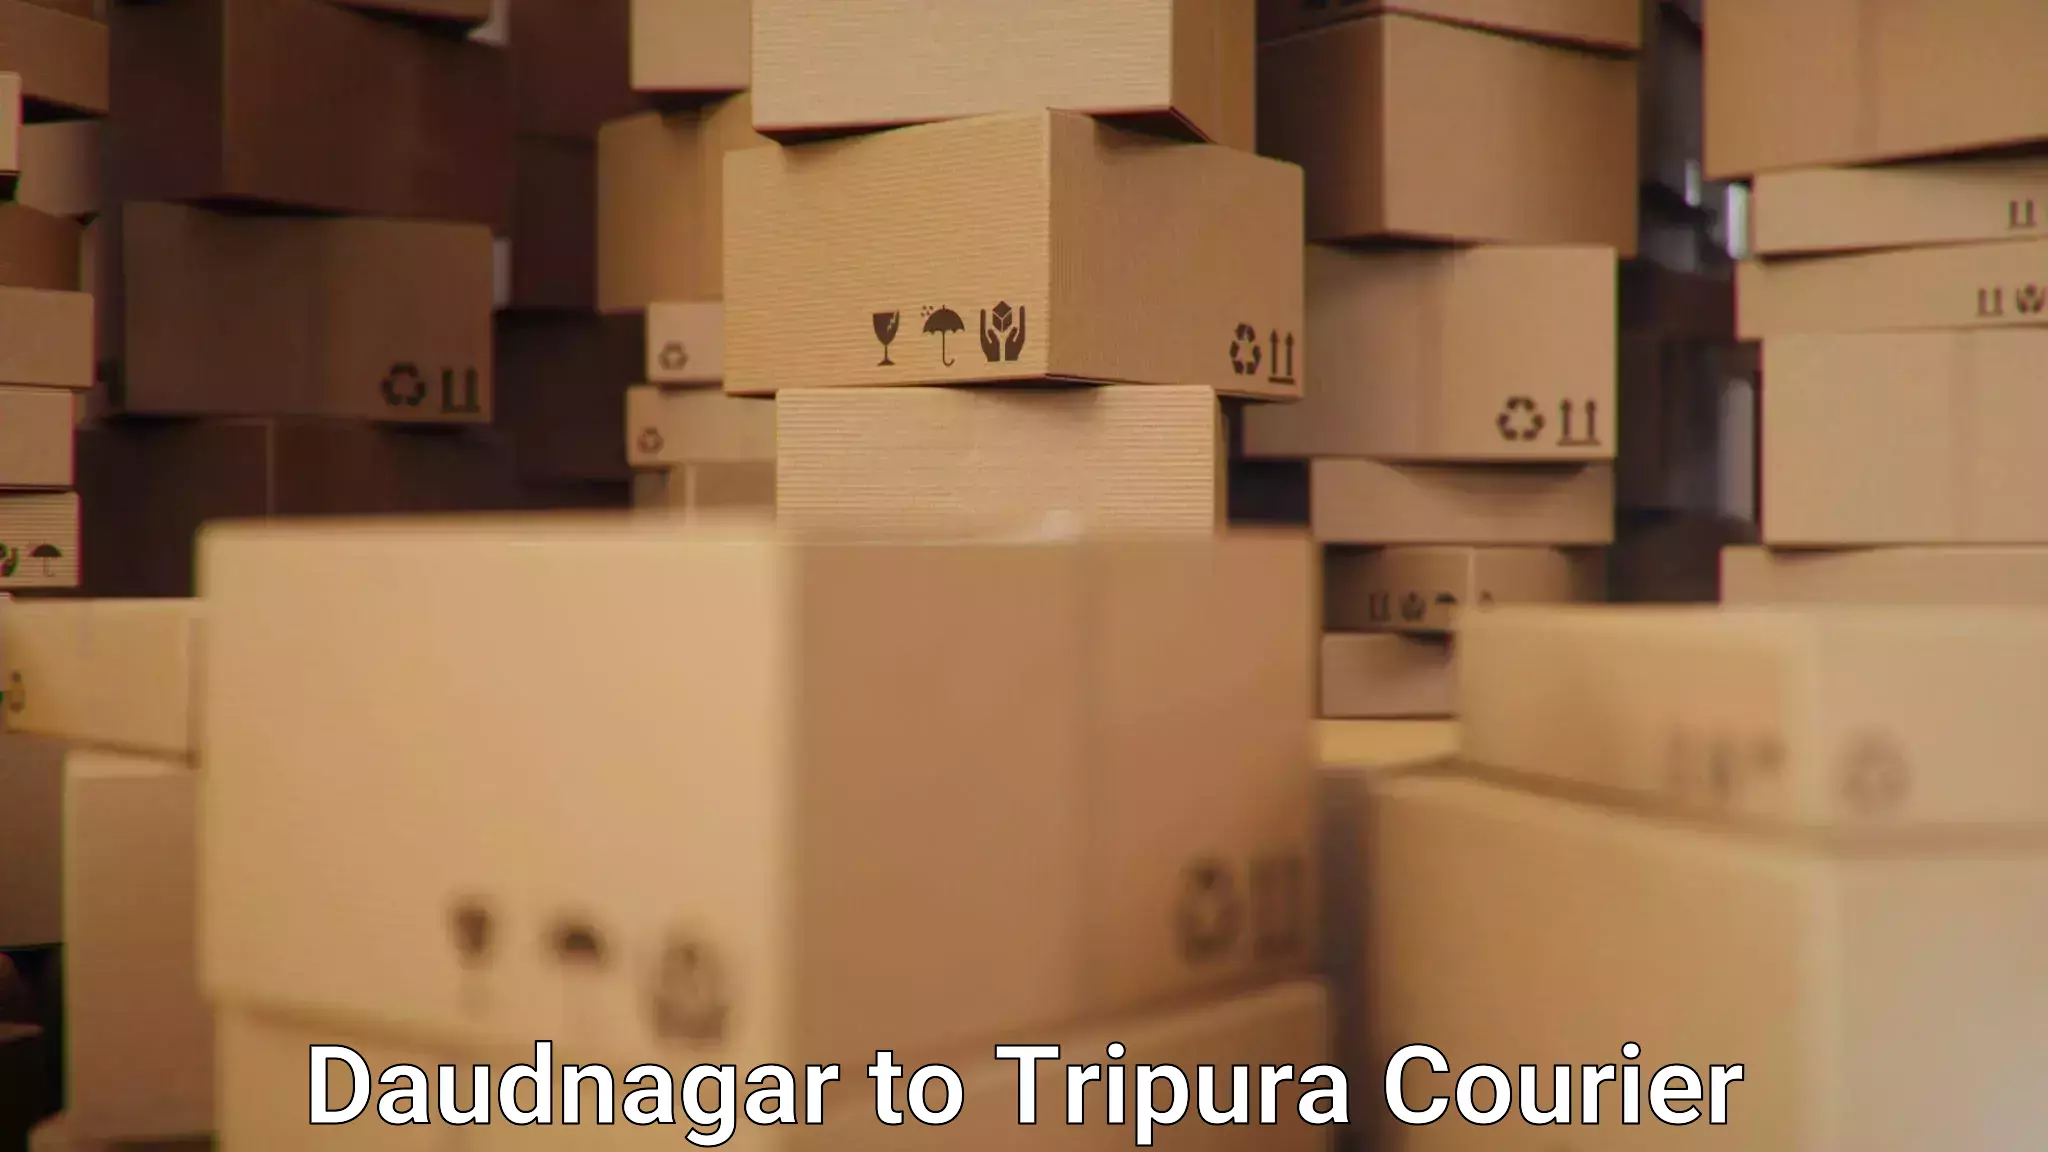 Tech-enabled shipping Daudnagar to Dharmanagar